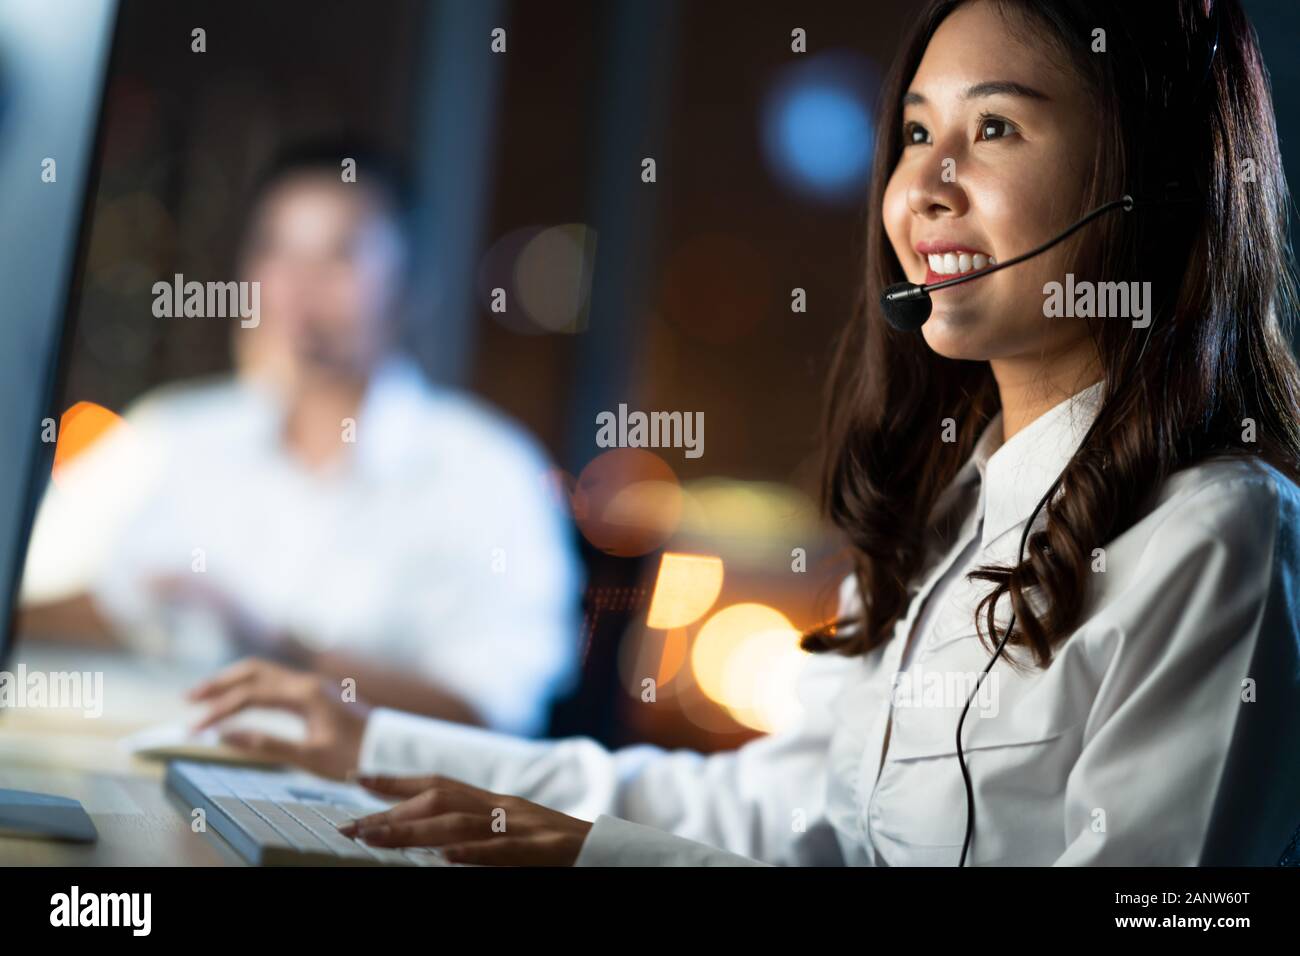 La donna asiatica lavora come servizio di assistenza clienti o operatore telefonico del call center, utilizzando il computer desktop e la cuffia del microfono, turno notturno Foto Stock